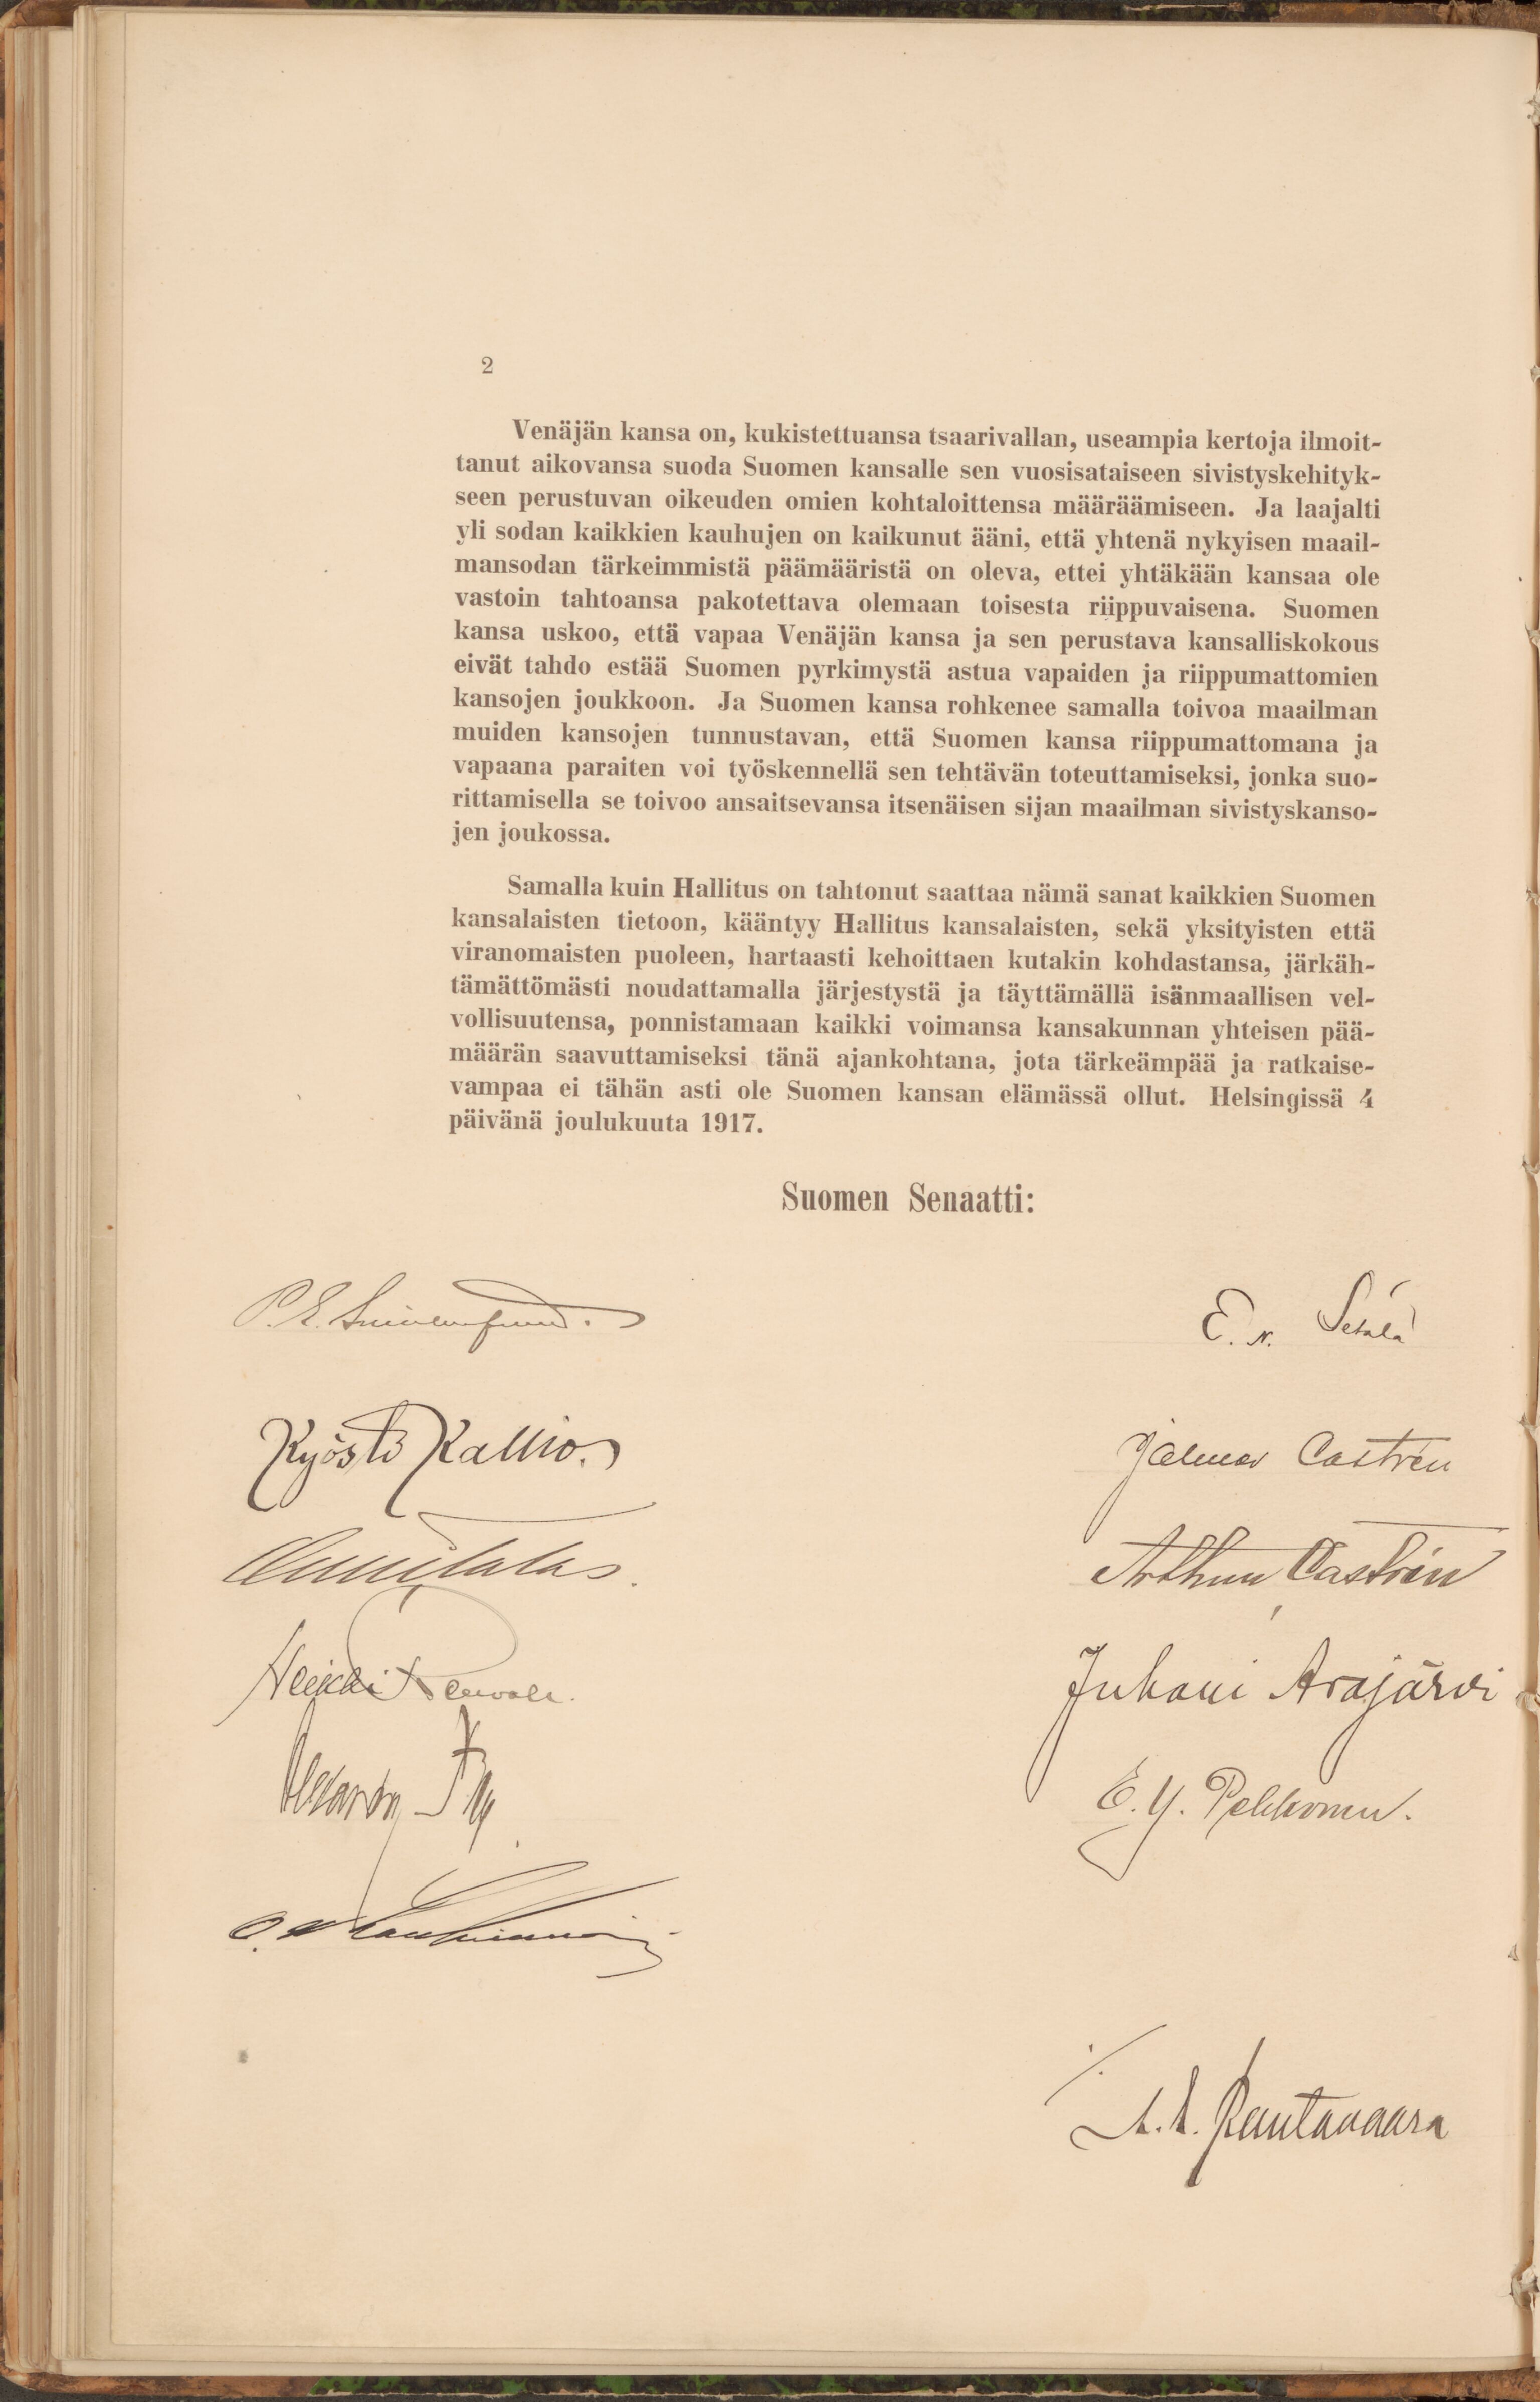 Kuva Suomen itsenäisyysjulistuksesta. Asiakirja on painettu ja sen alla ovat käsin kirjoitetut allekirjoitukset.